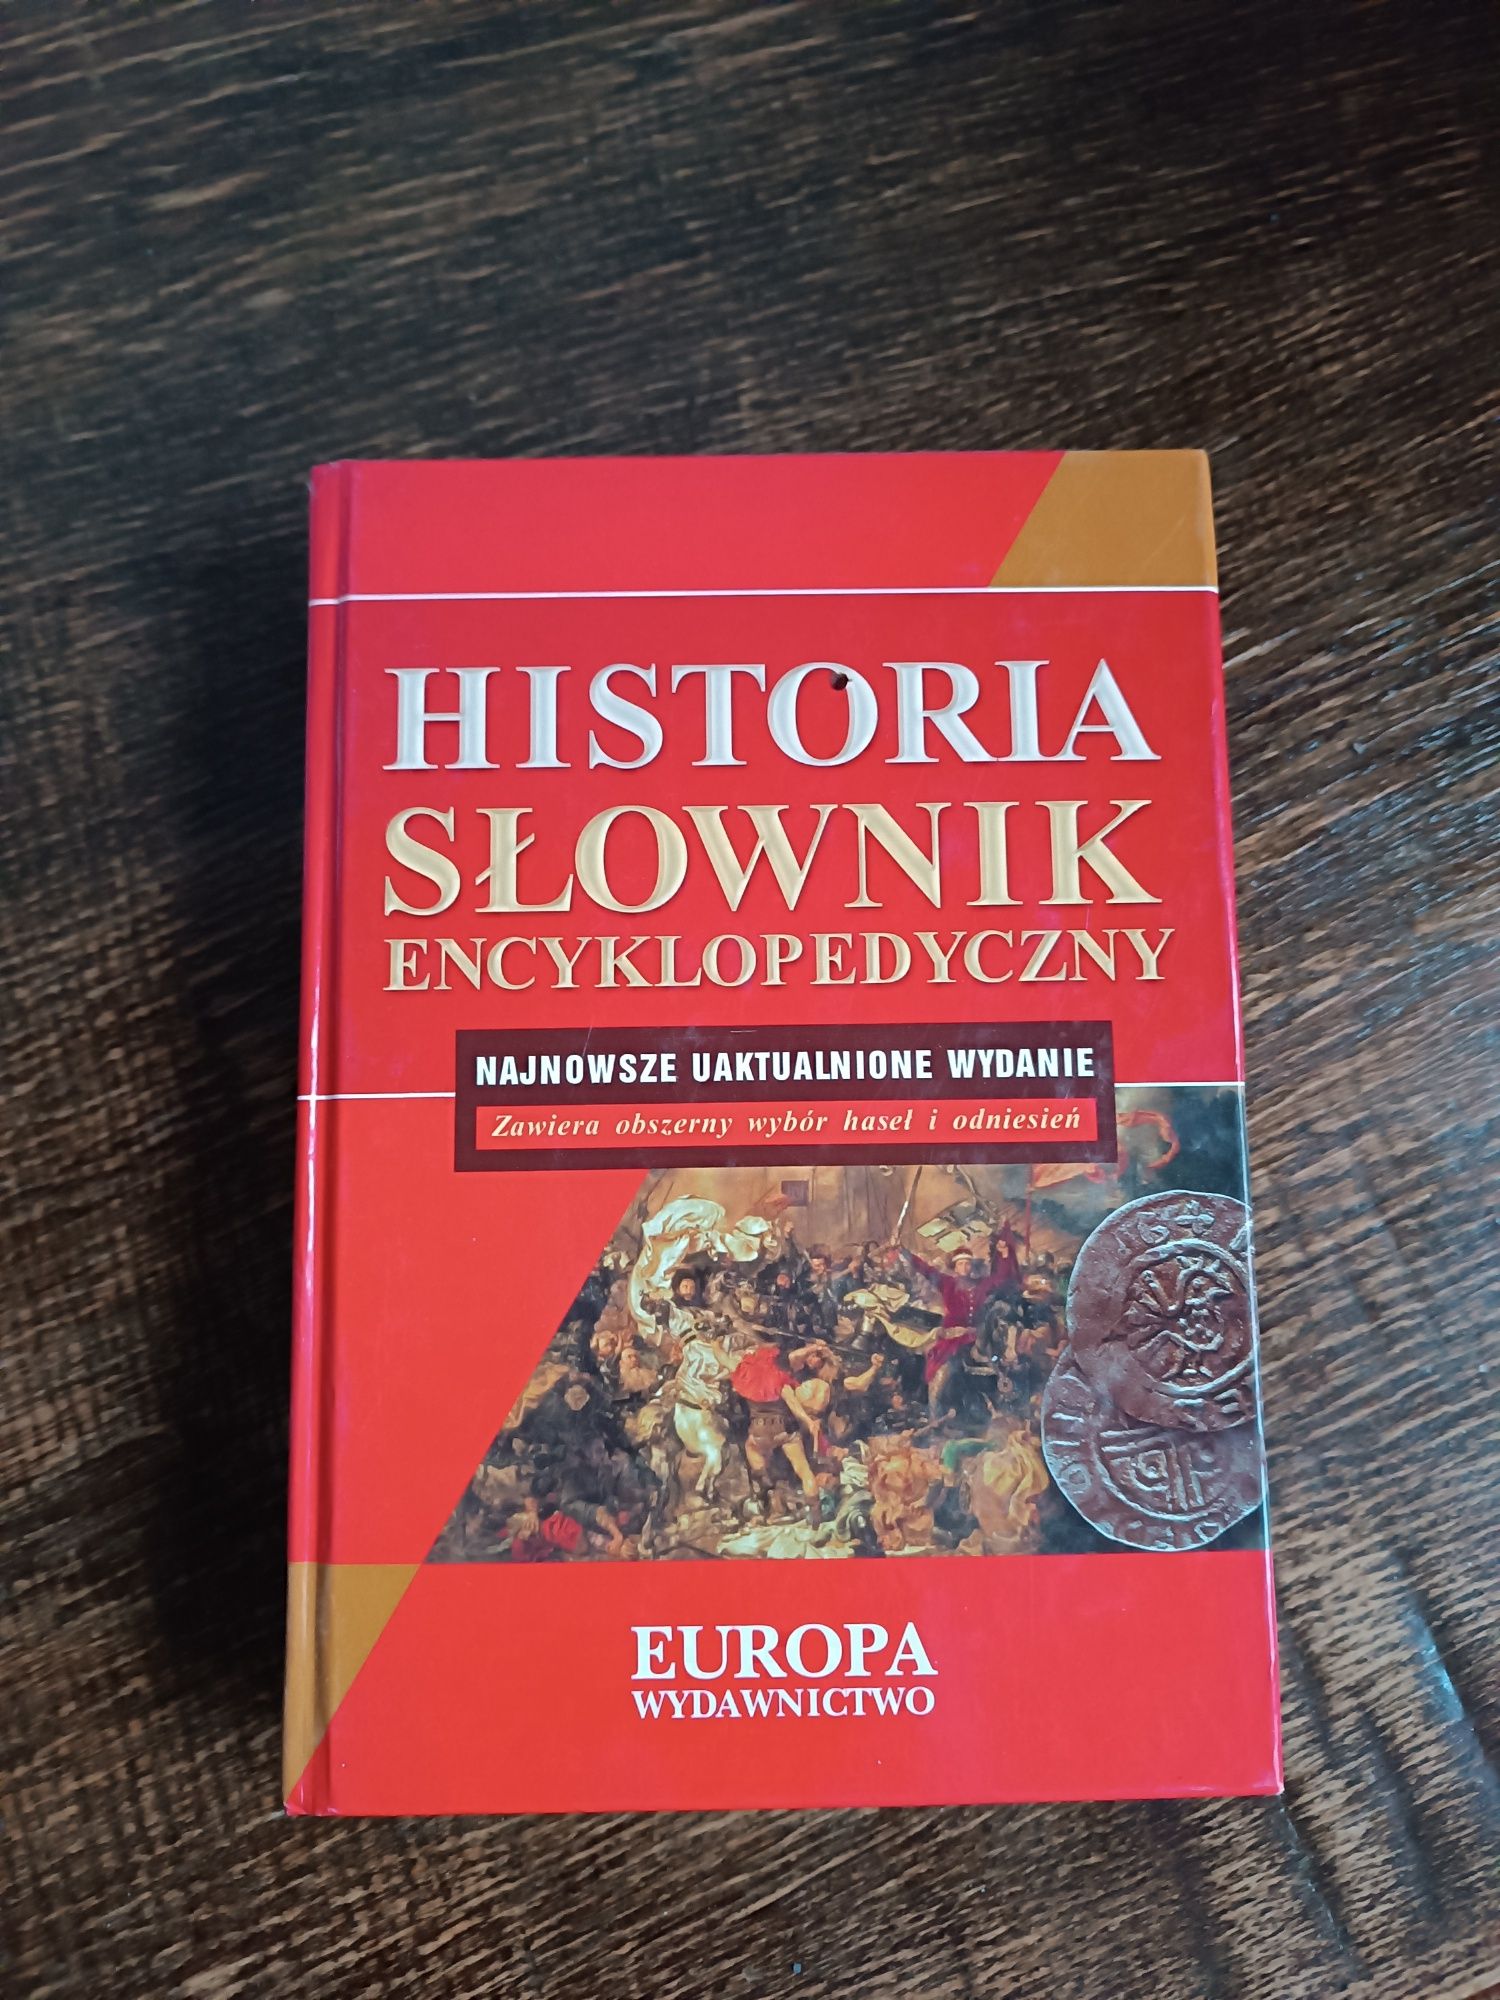 Słowniki encyklopedyczne i słownik języka polskiego